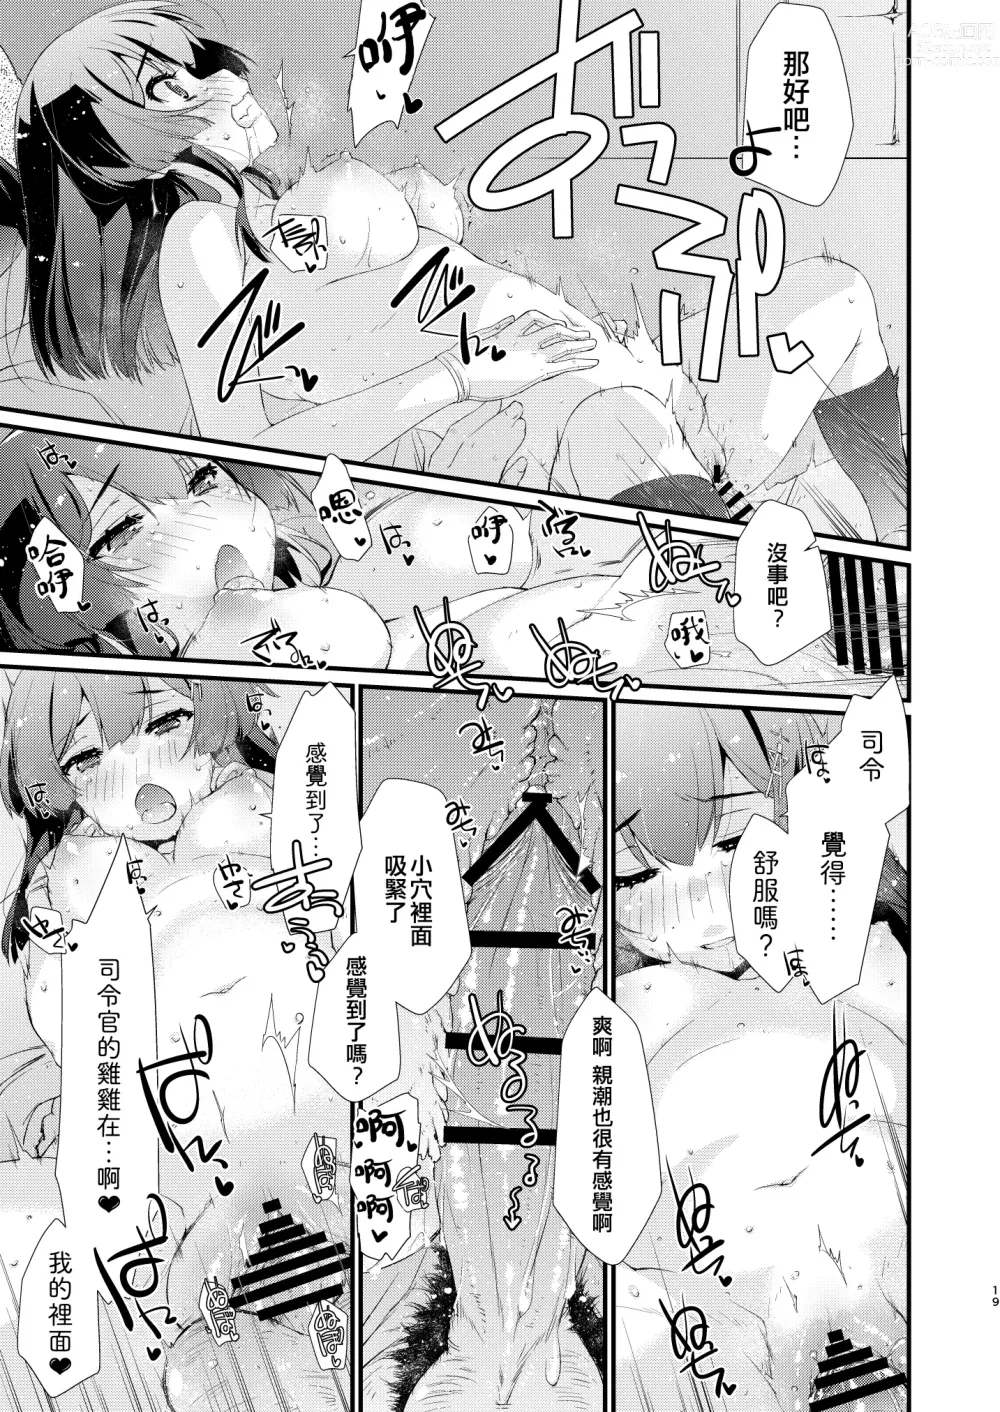 Page 19 of doujinshi Oyashio-chan no Koki Tebukuro.